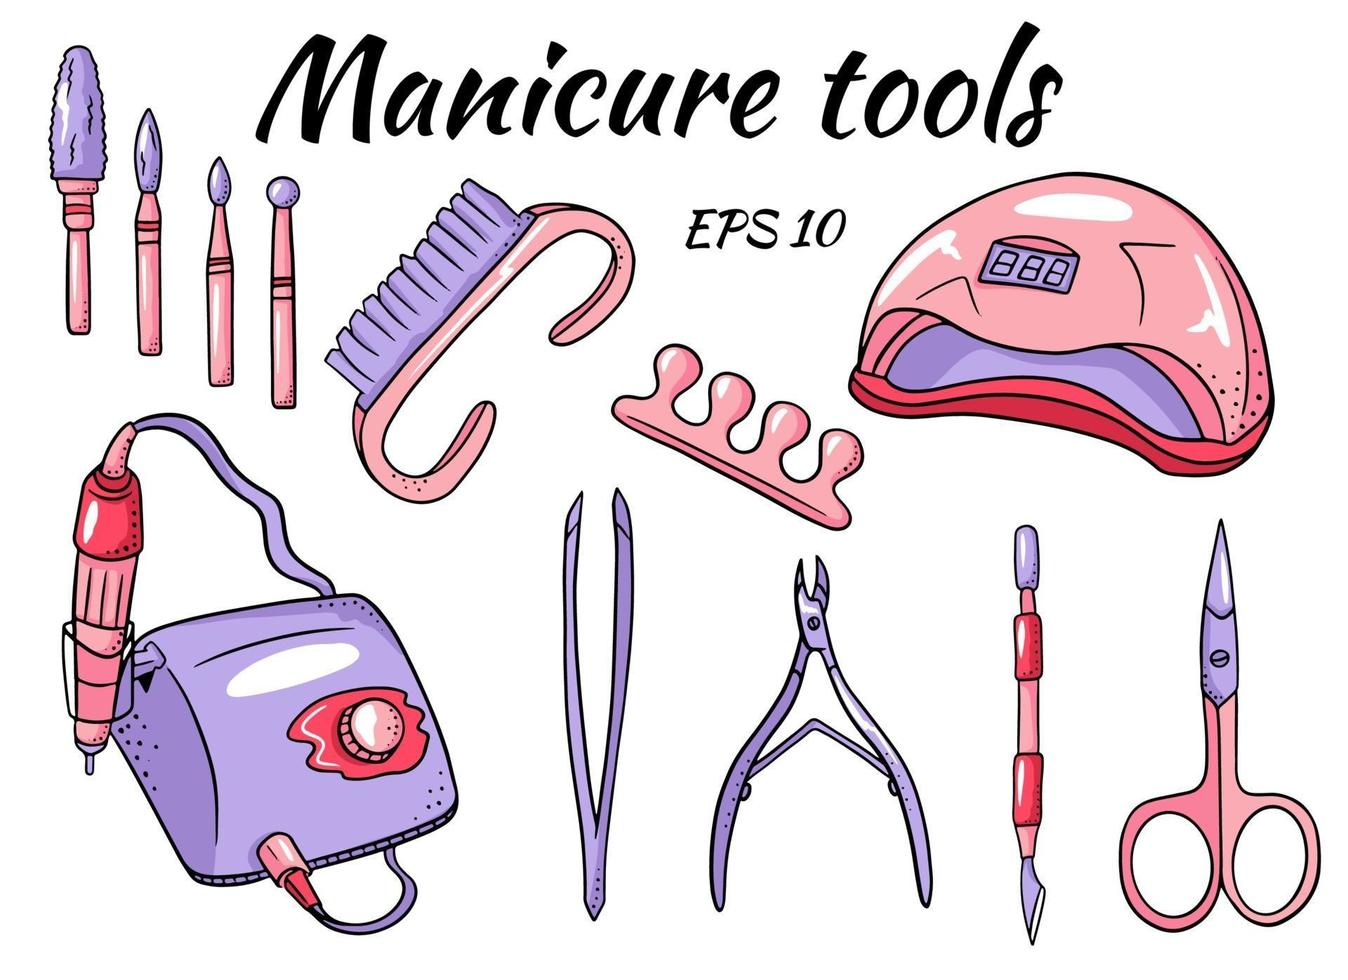 un conjunto de herramientas de manicura. hardware para manicura y pedicura vector